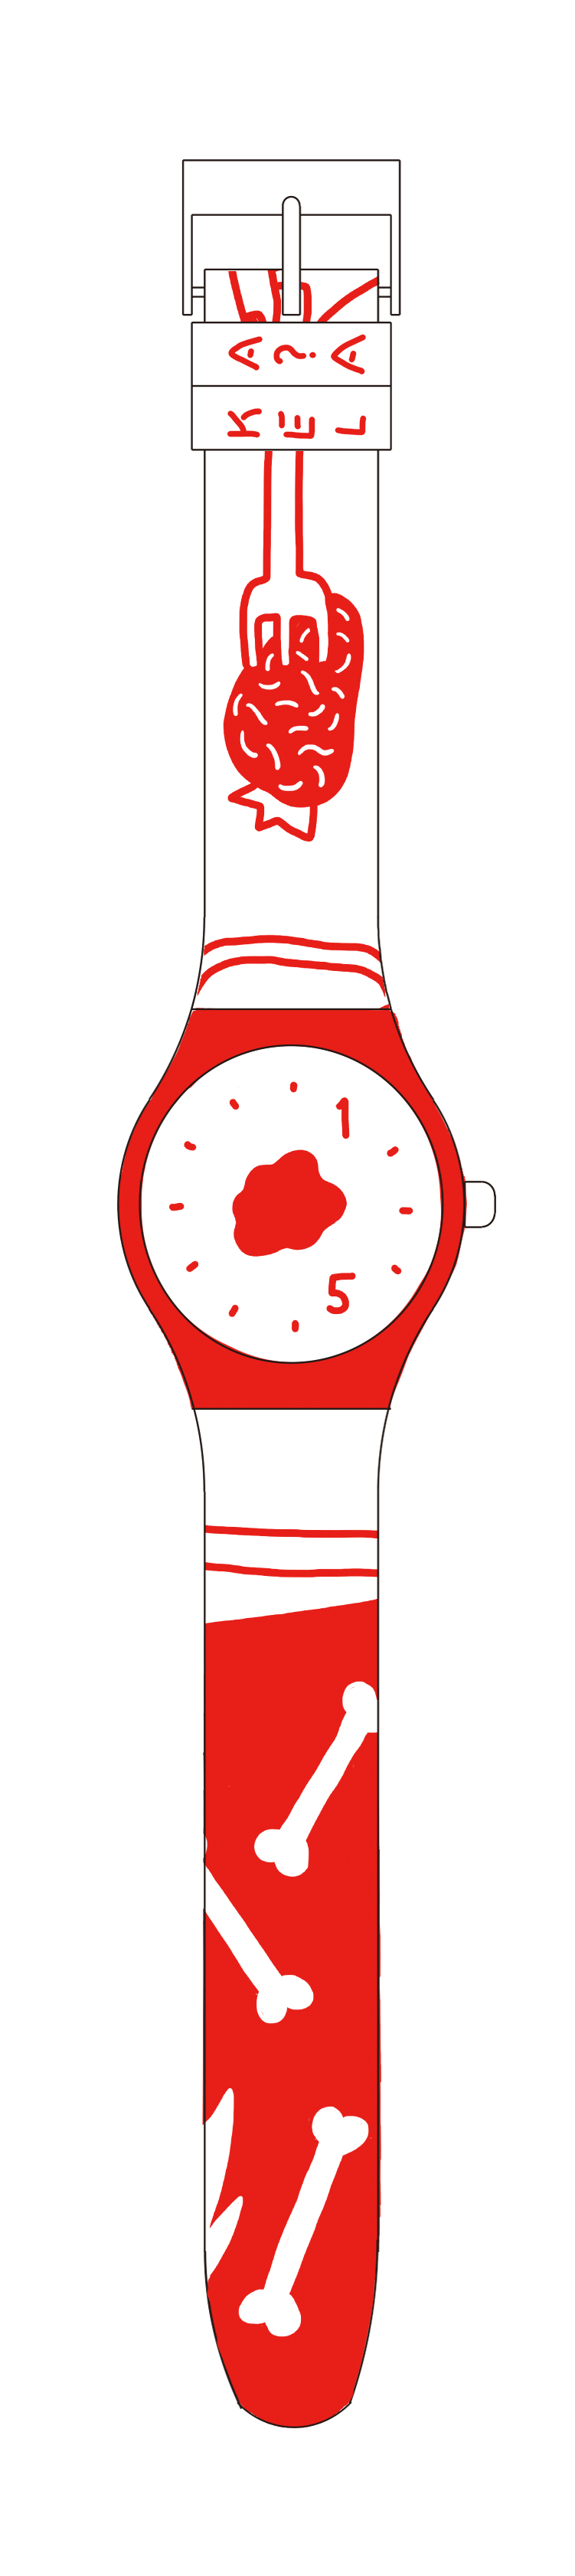 15年の時をかけるカエラ腕時計.jpg